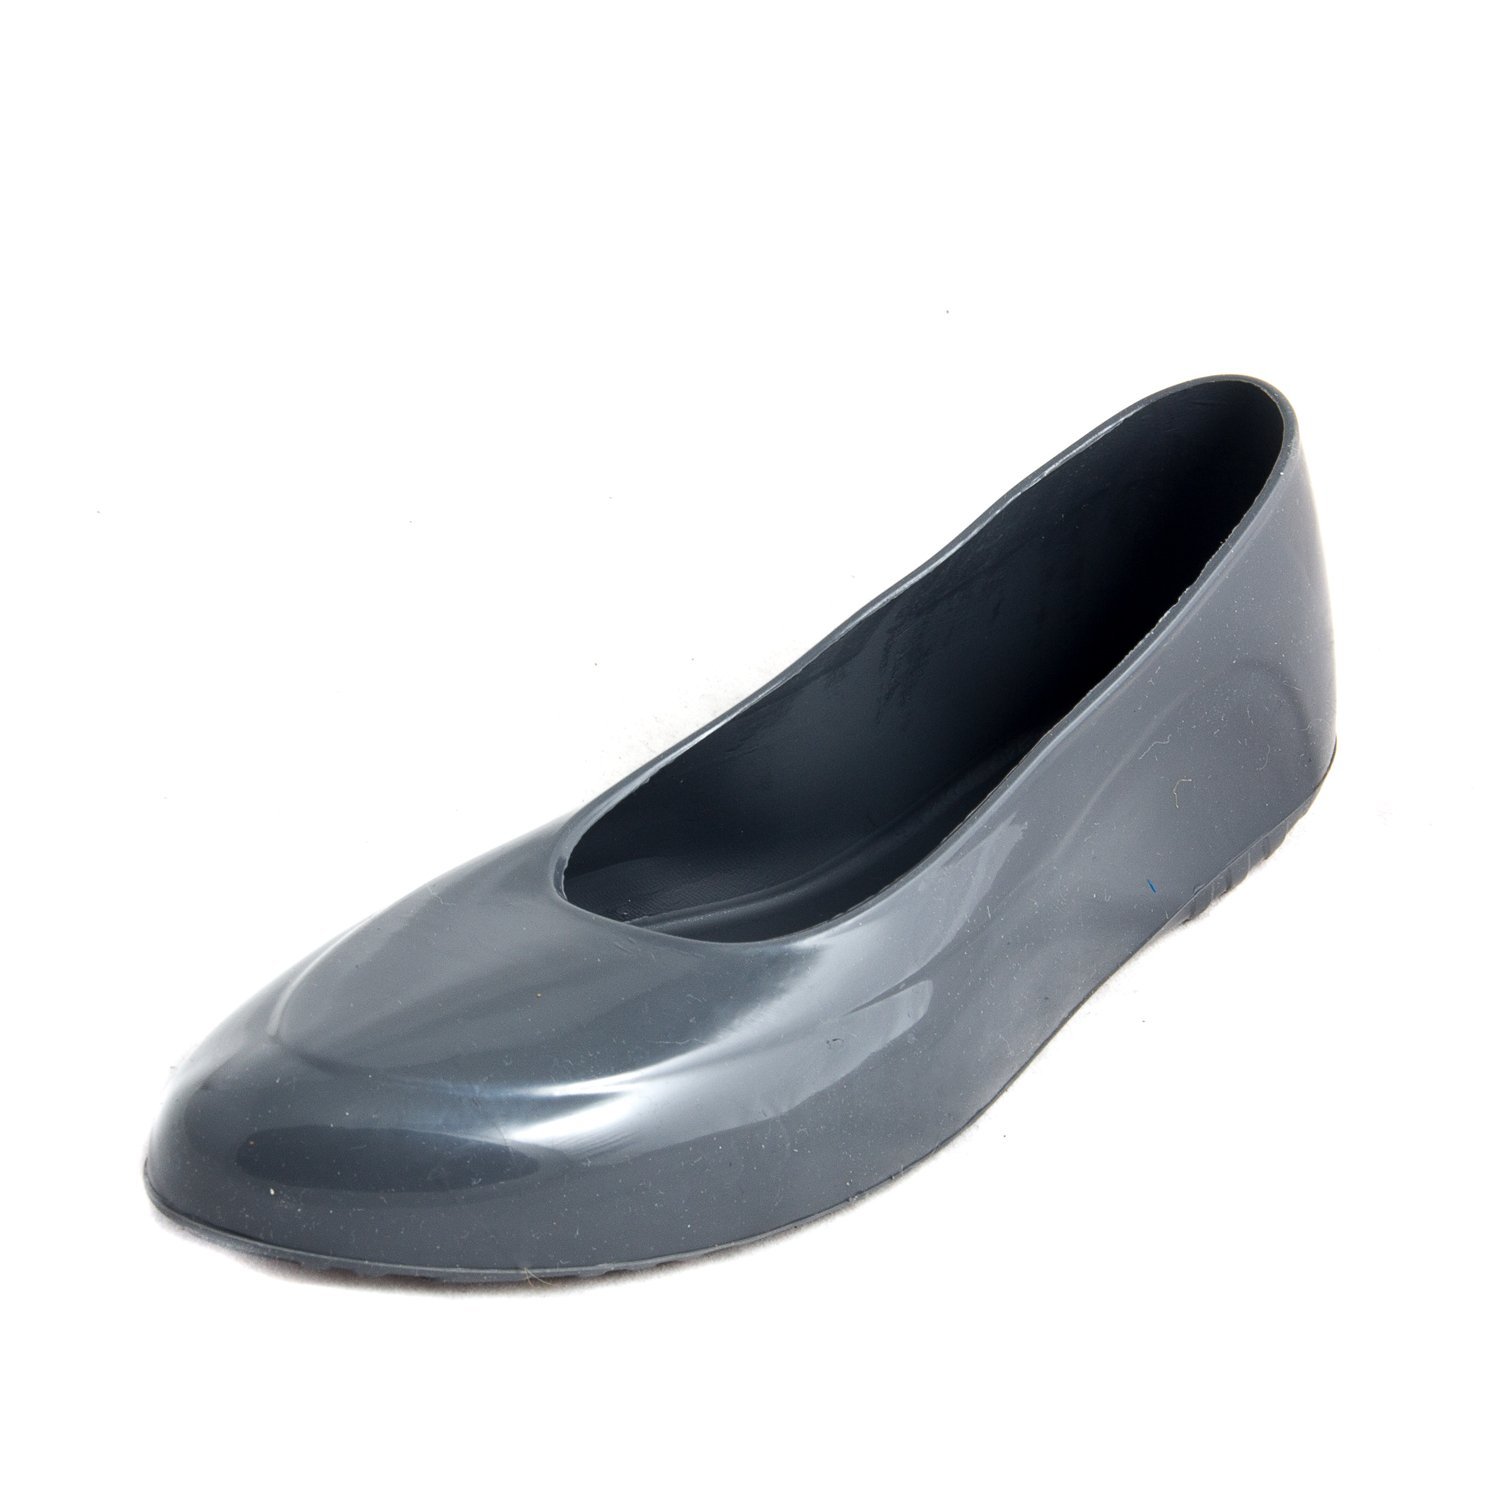 Калоши для обуви купить. Галоши ЭВА HS-8105. Галоши Zont мужские. Галоши резиновые Тип ККН 15.20.11.122-001. Ecco резиновые галоши 211205/100.